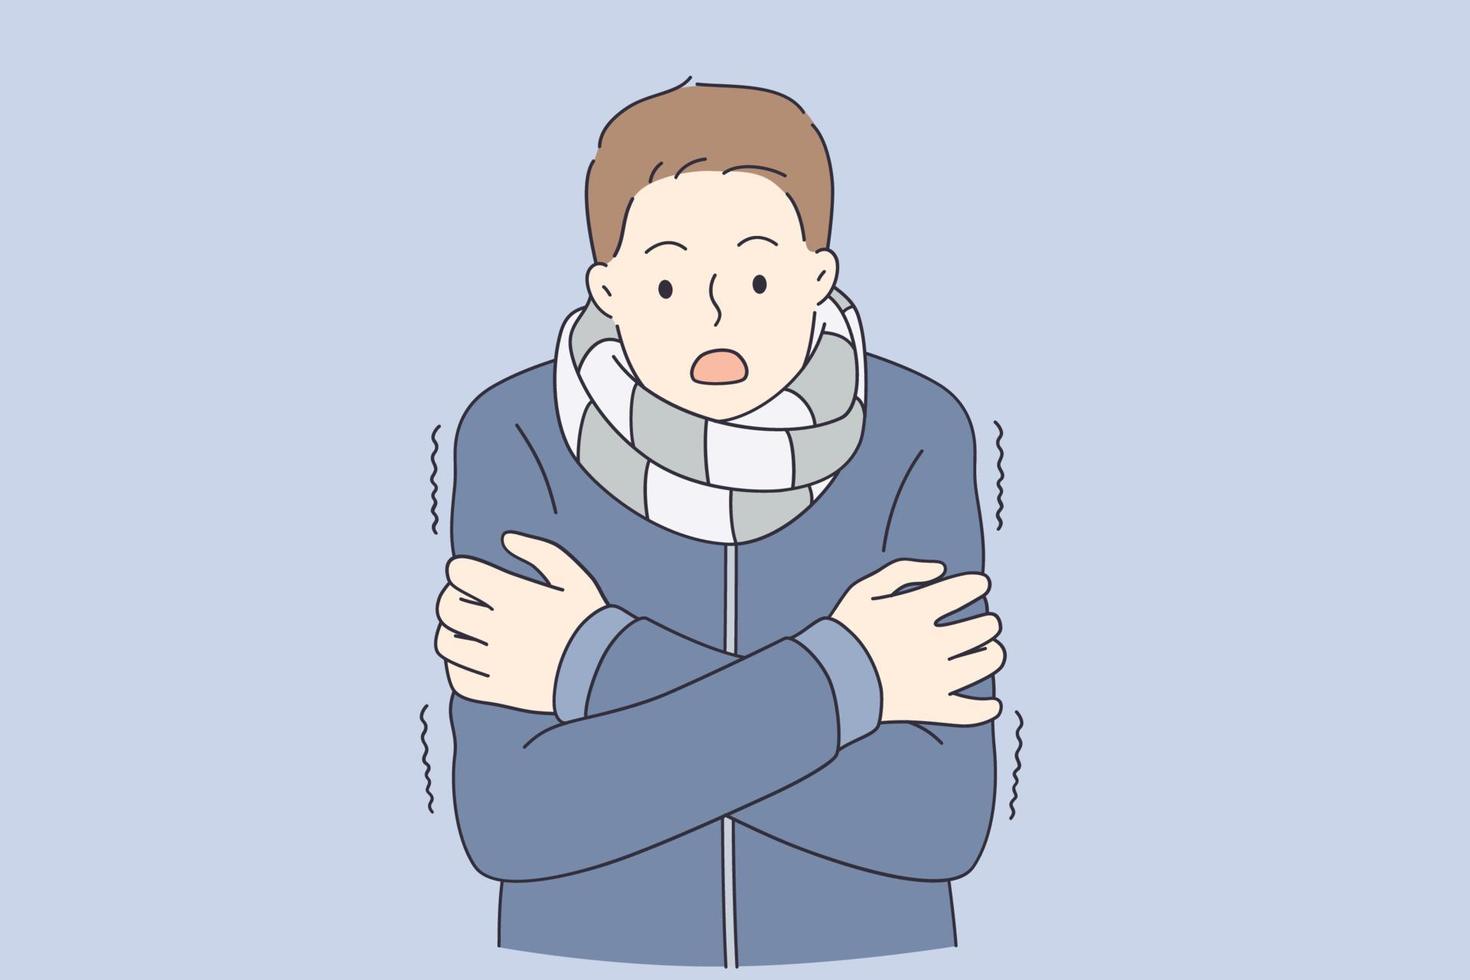 sentindo o conceito de frio e congelado. jovem de casaco quente e cachecol em pé sentindo frio com ilustração vetorial de olhar surpreso vetor